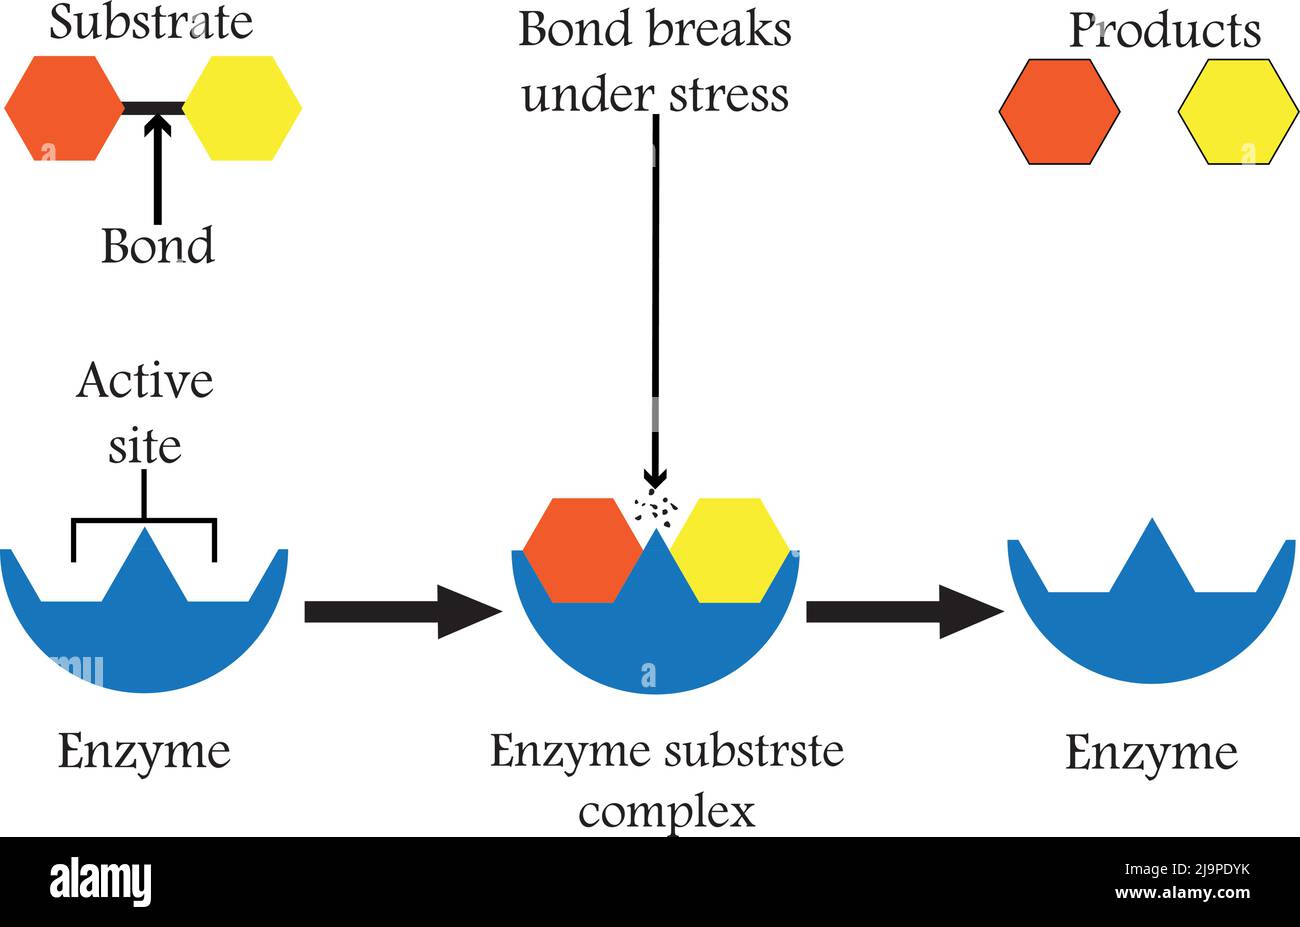 Enzymes qui décomposent les composés alimentaires en leurs blocs de base, pour faciliter son absorption dans le corps, et nous les appelons enzymes digestives. Illustration de Vecteur